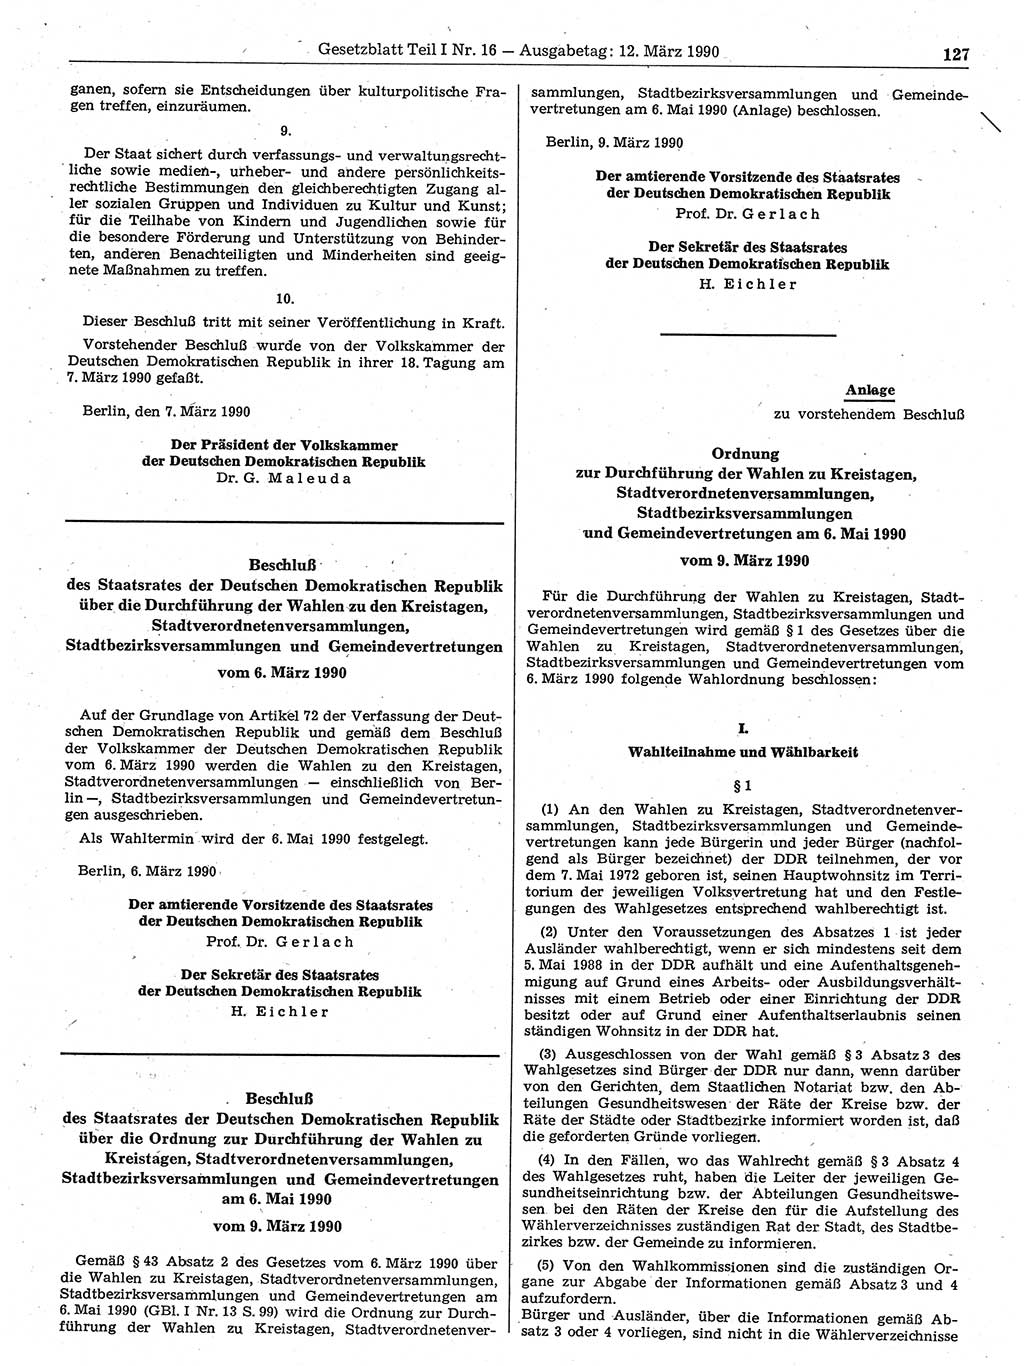 Gesetzblatt (GBl.) der Deutschen Demokratischen Republik (DDR) Teil Ⅰ 1990, Seite 127 (GBl. DDR Ⅰ 1990, S. 127)